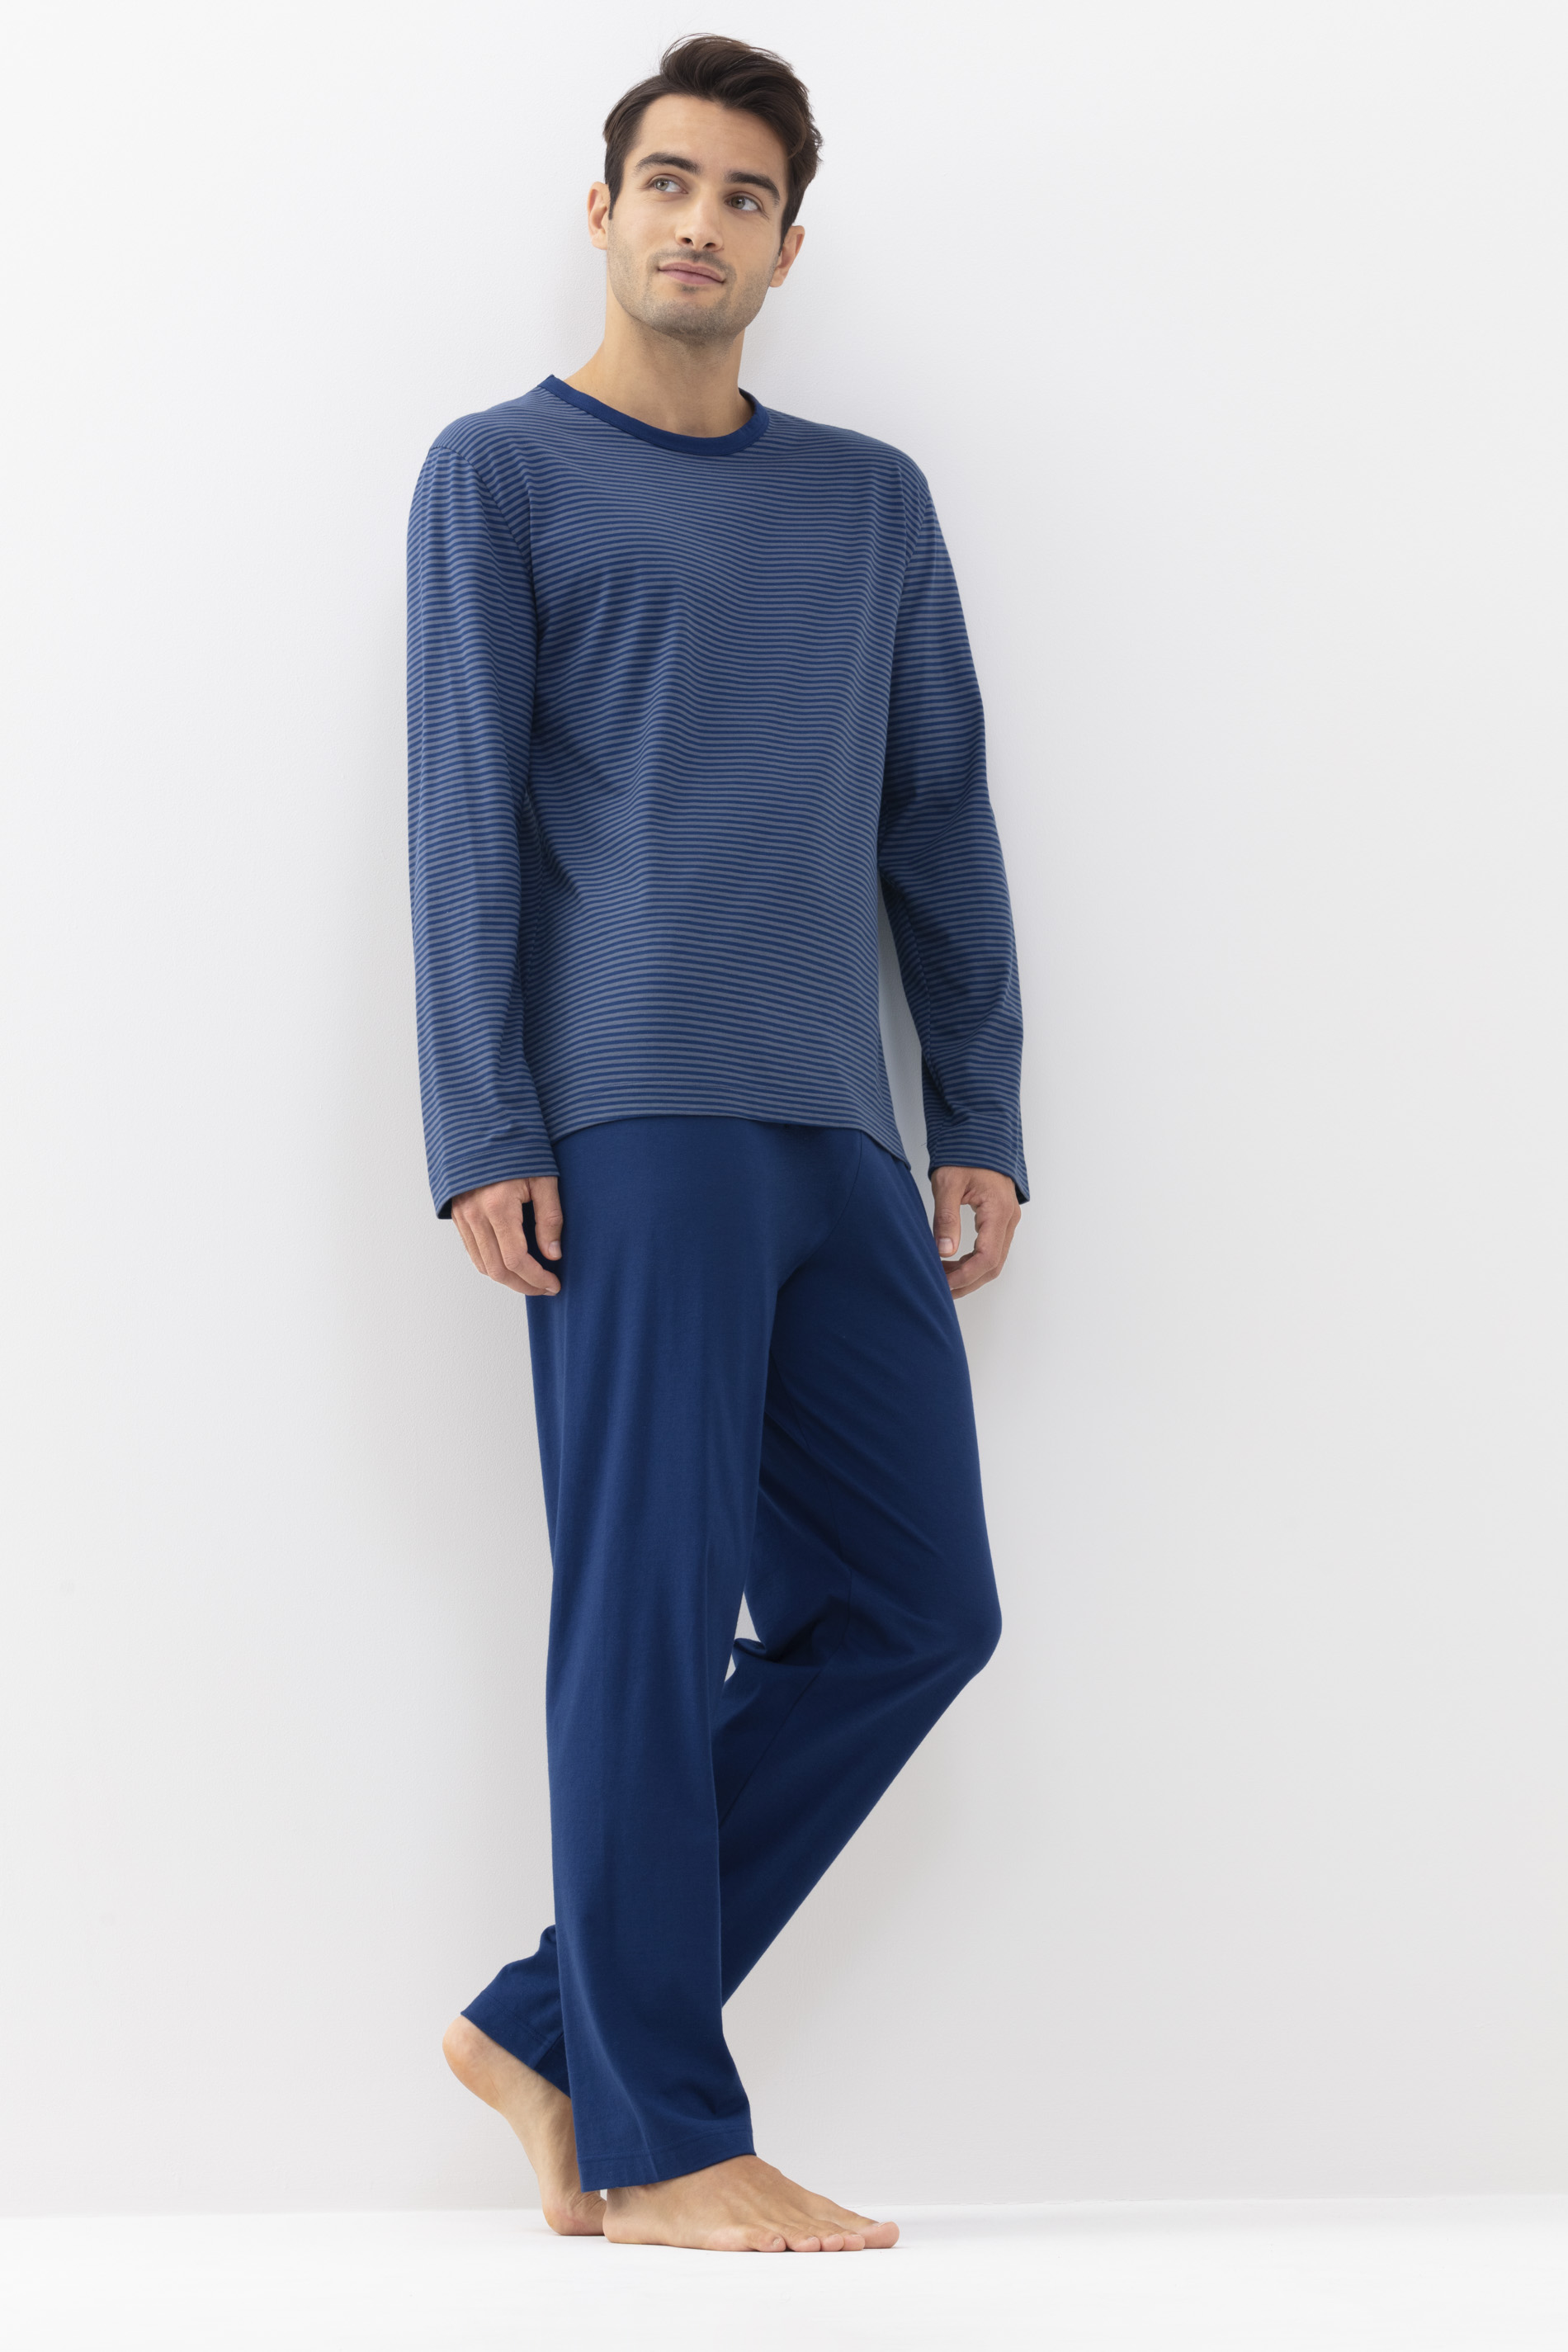 Pyjama Neptune Serie Cardwell Festlegen | mey®